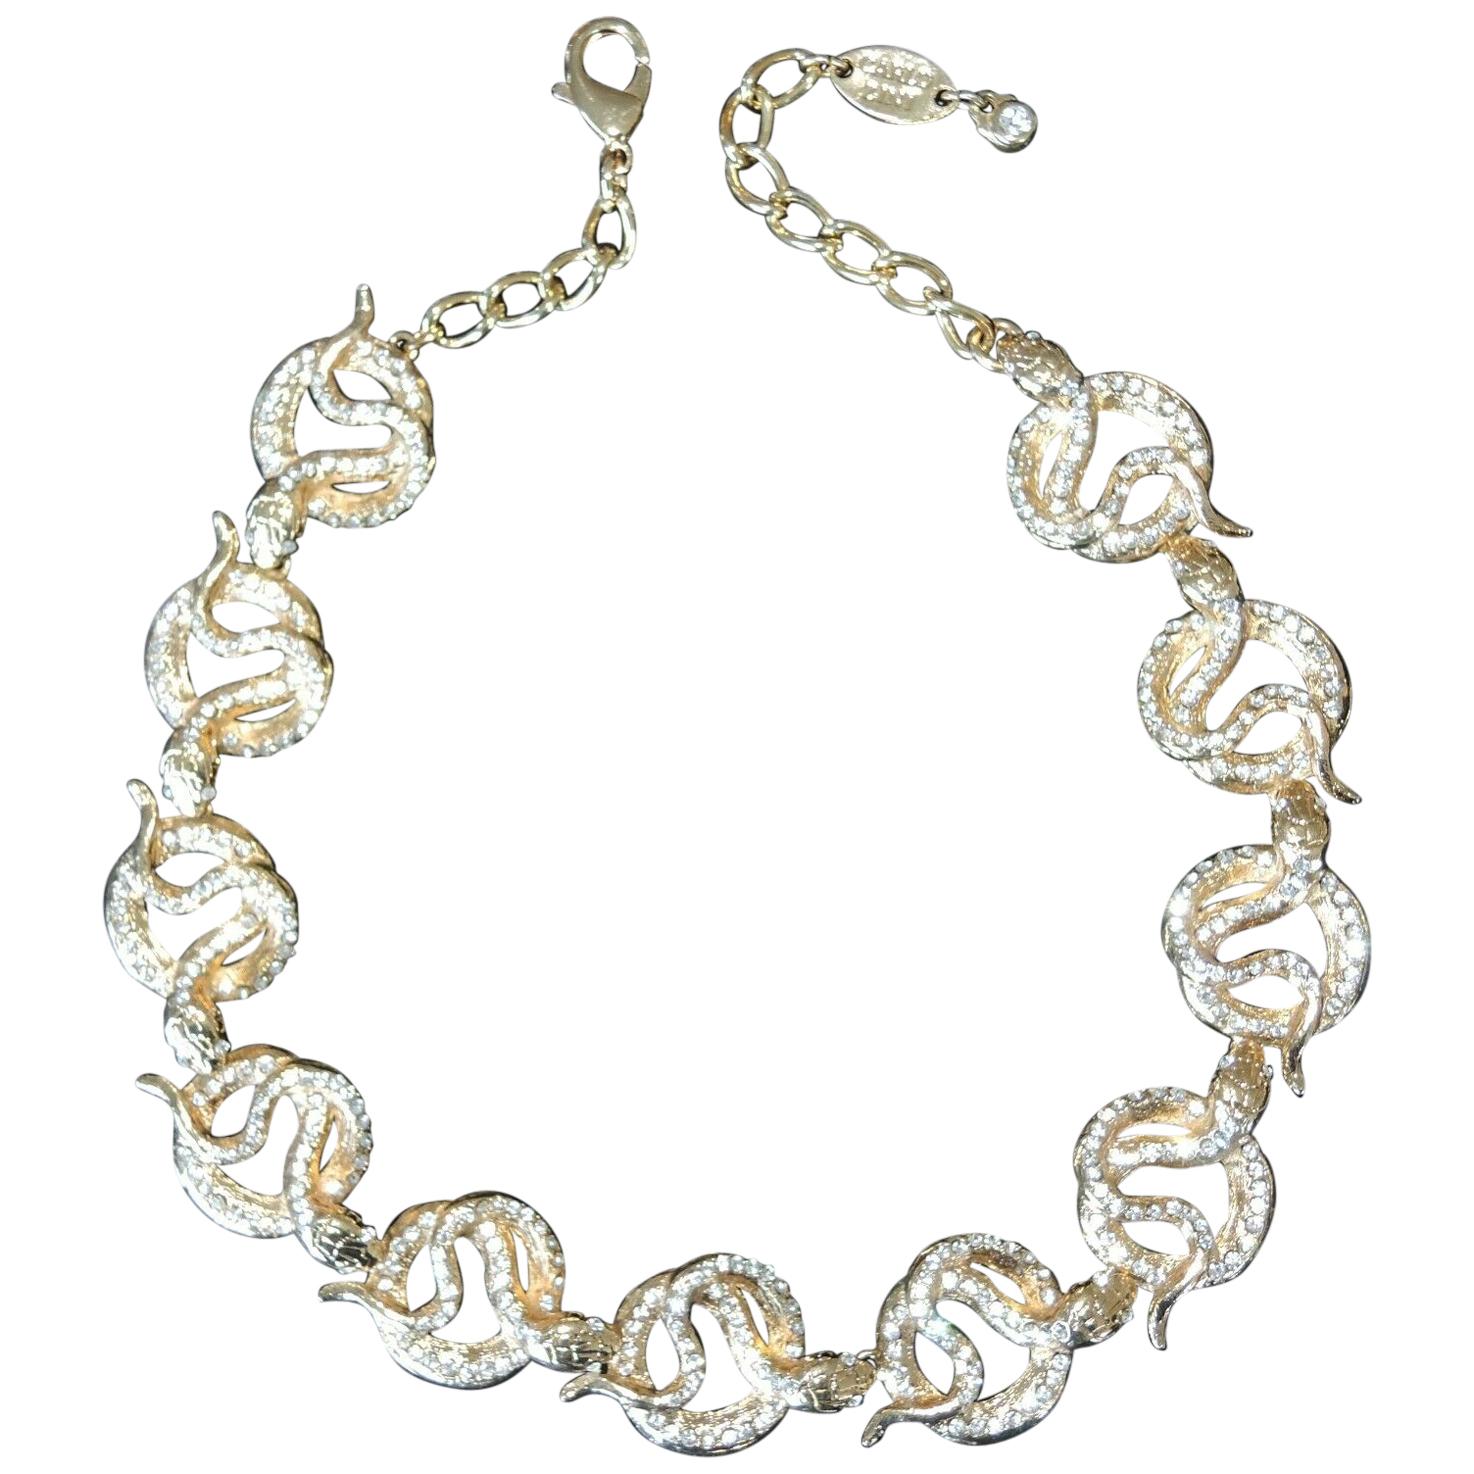 Designer Signed Carlo Zini Sparkling Crystal Serpent Snake Link Necklace For Sale